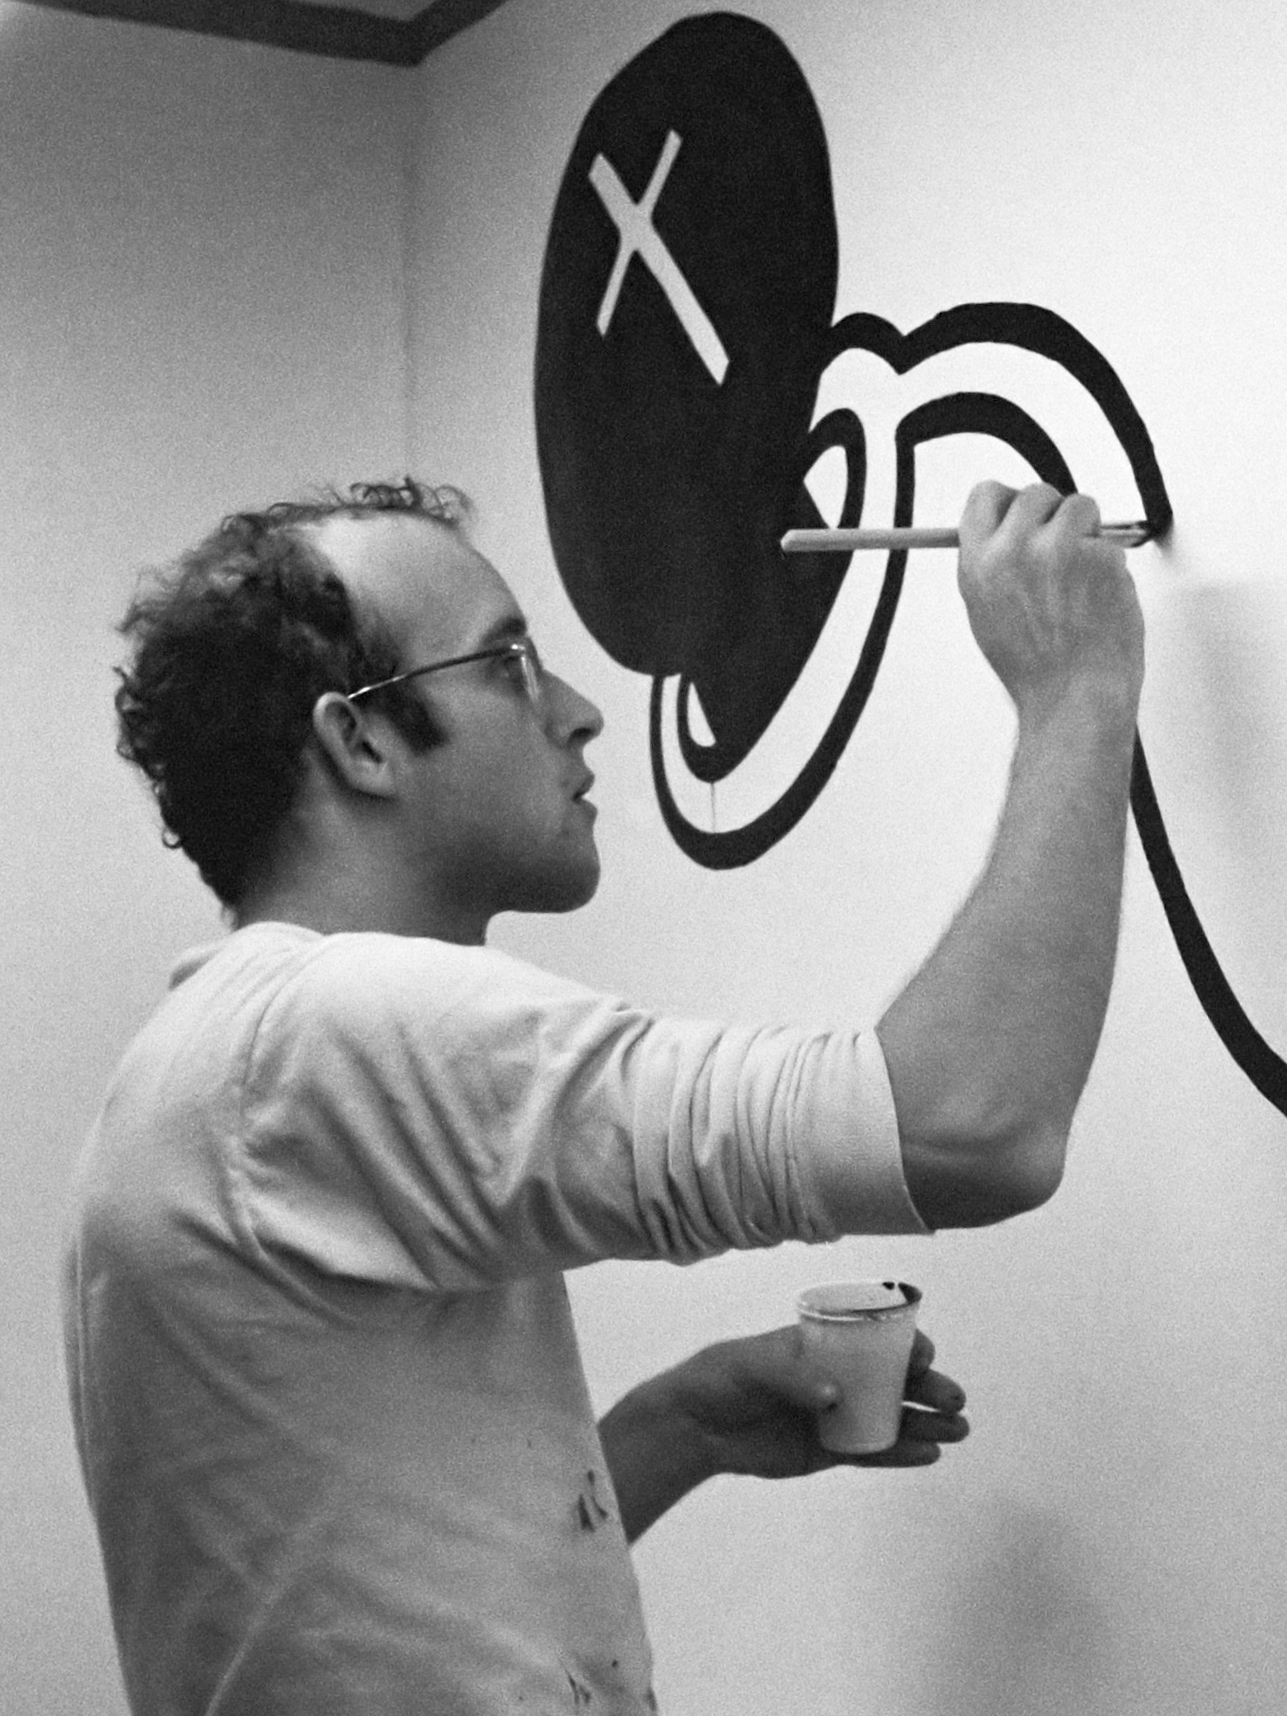 auteur Keith Haring de la citation Les gens étaient plus intéressés par les phénomènes que l'art lui-même. Ceci, combiné à l'intérêt croissant pour la collecte de l'art en tant qu'investissement et le boom en conséquence sur le marché de l'art, a rendu une période difficile pour un jeune artiste de rester sincère sans devenir cynique.